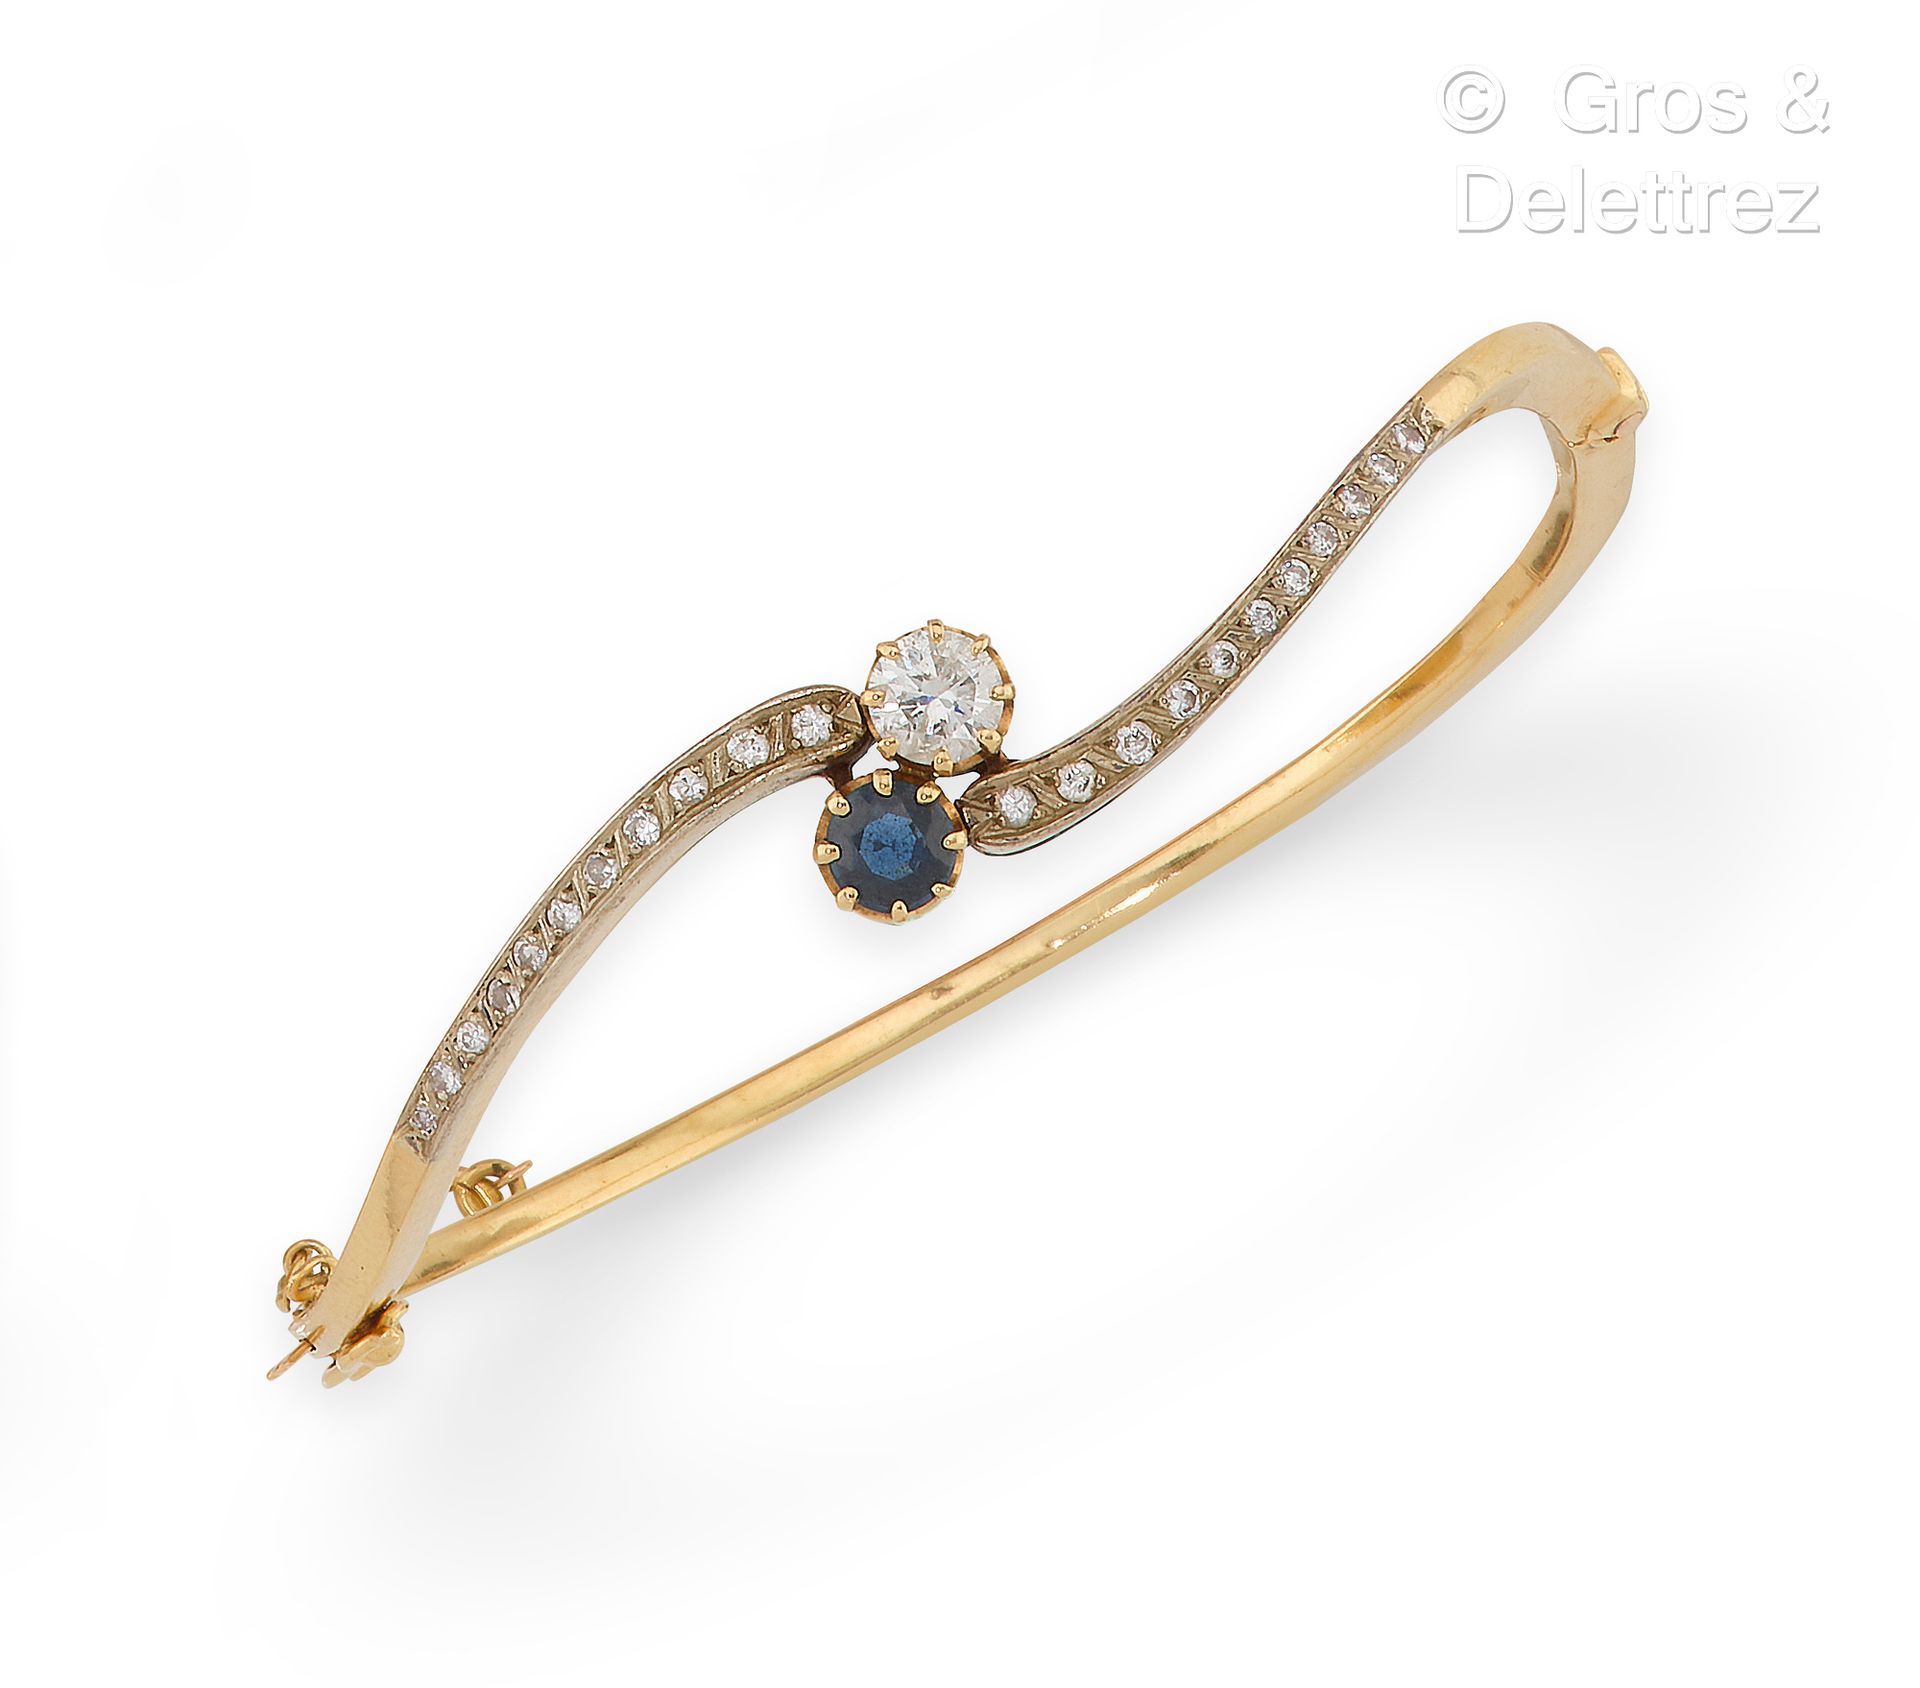 Null 黄金 "Opening band "手镯，由镶嵌有蓝宝石和明亮型切割钻石的卷轴和较小钻石组成。手腕尺寸：18厘米。毛重：19.2克。